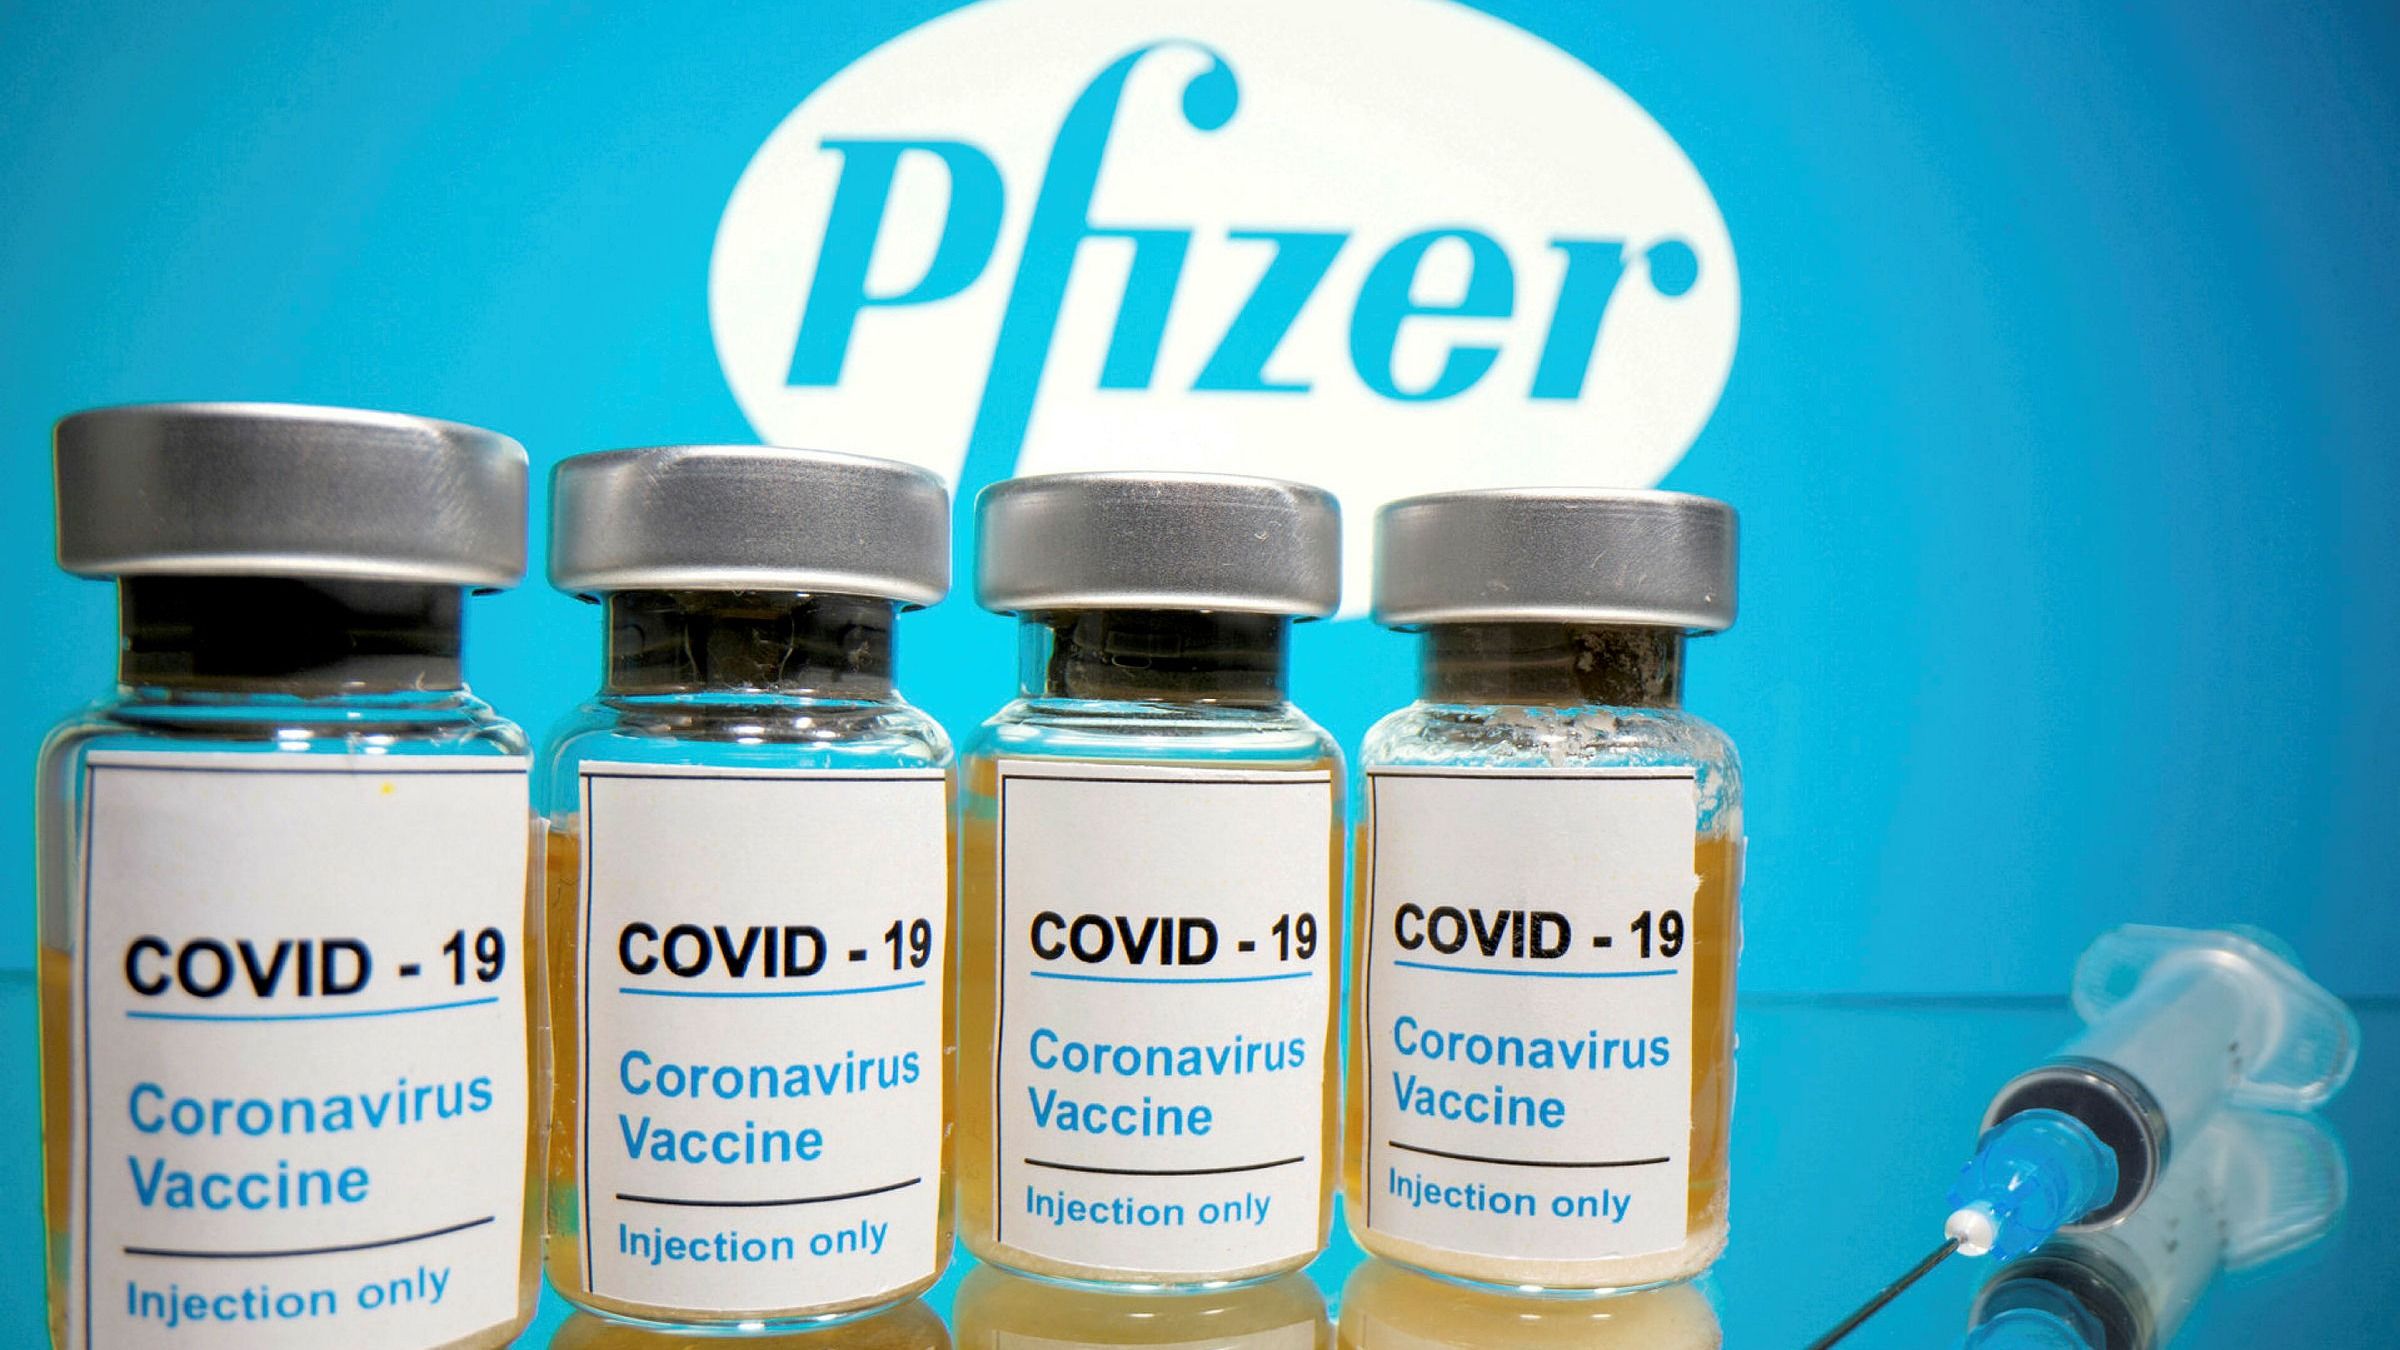 Comparison of the COVID 19 vaccines